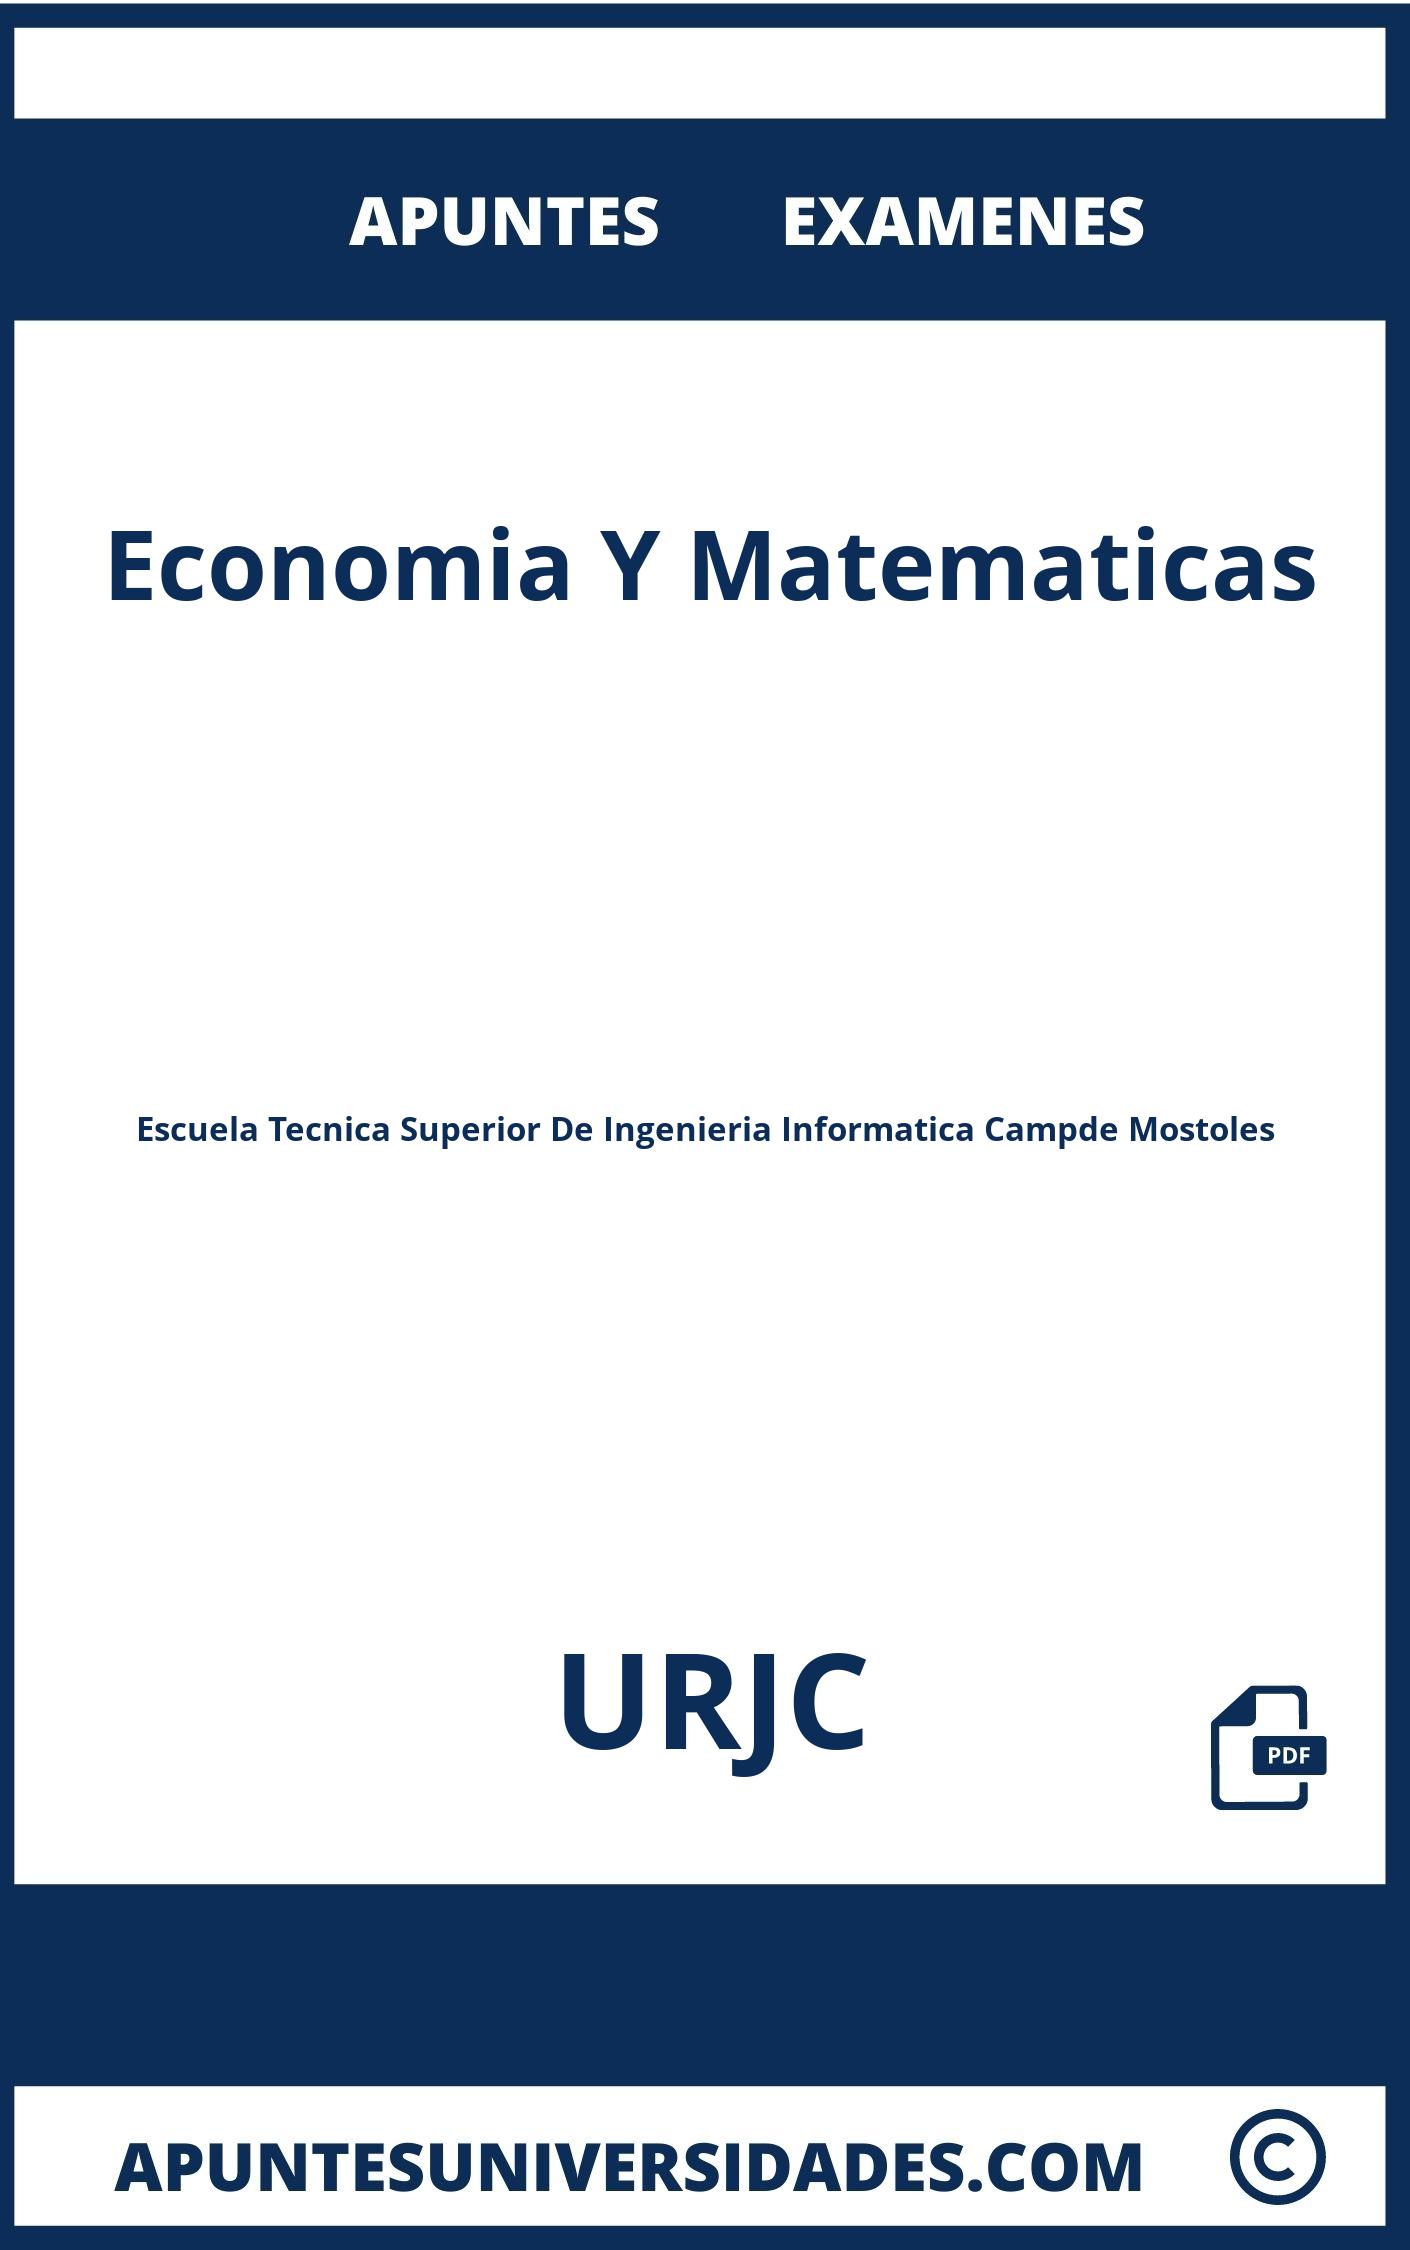 Examenes y Apuntes Economia Y Matematicas URJC